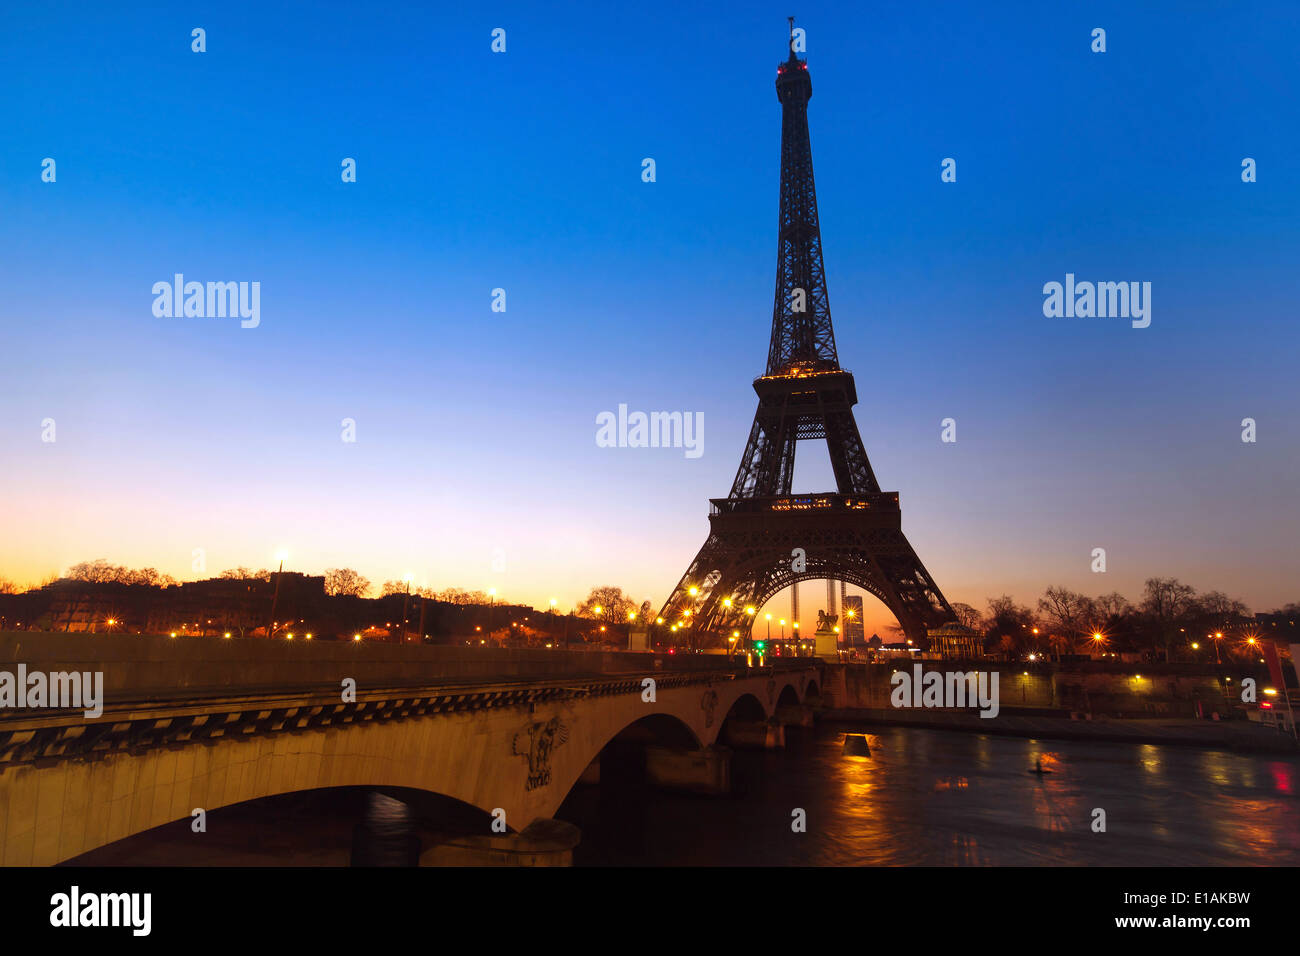 Vue nocturne de pont sur Seine et tour Eiffel, Paris, France Banque D'Images